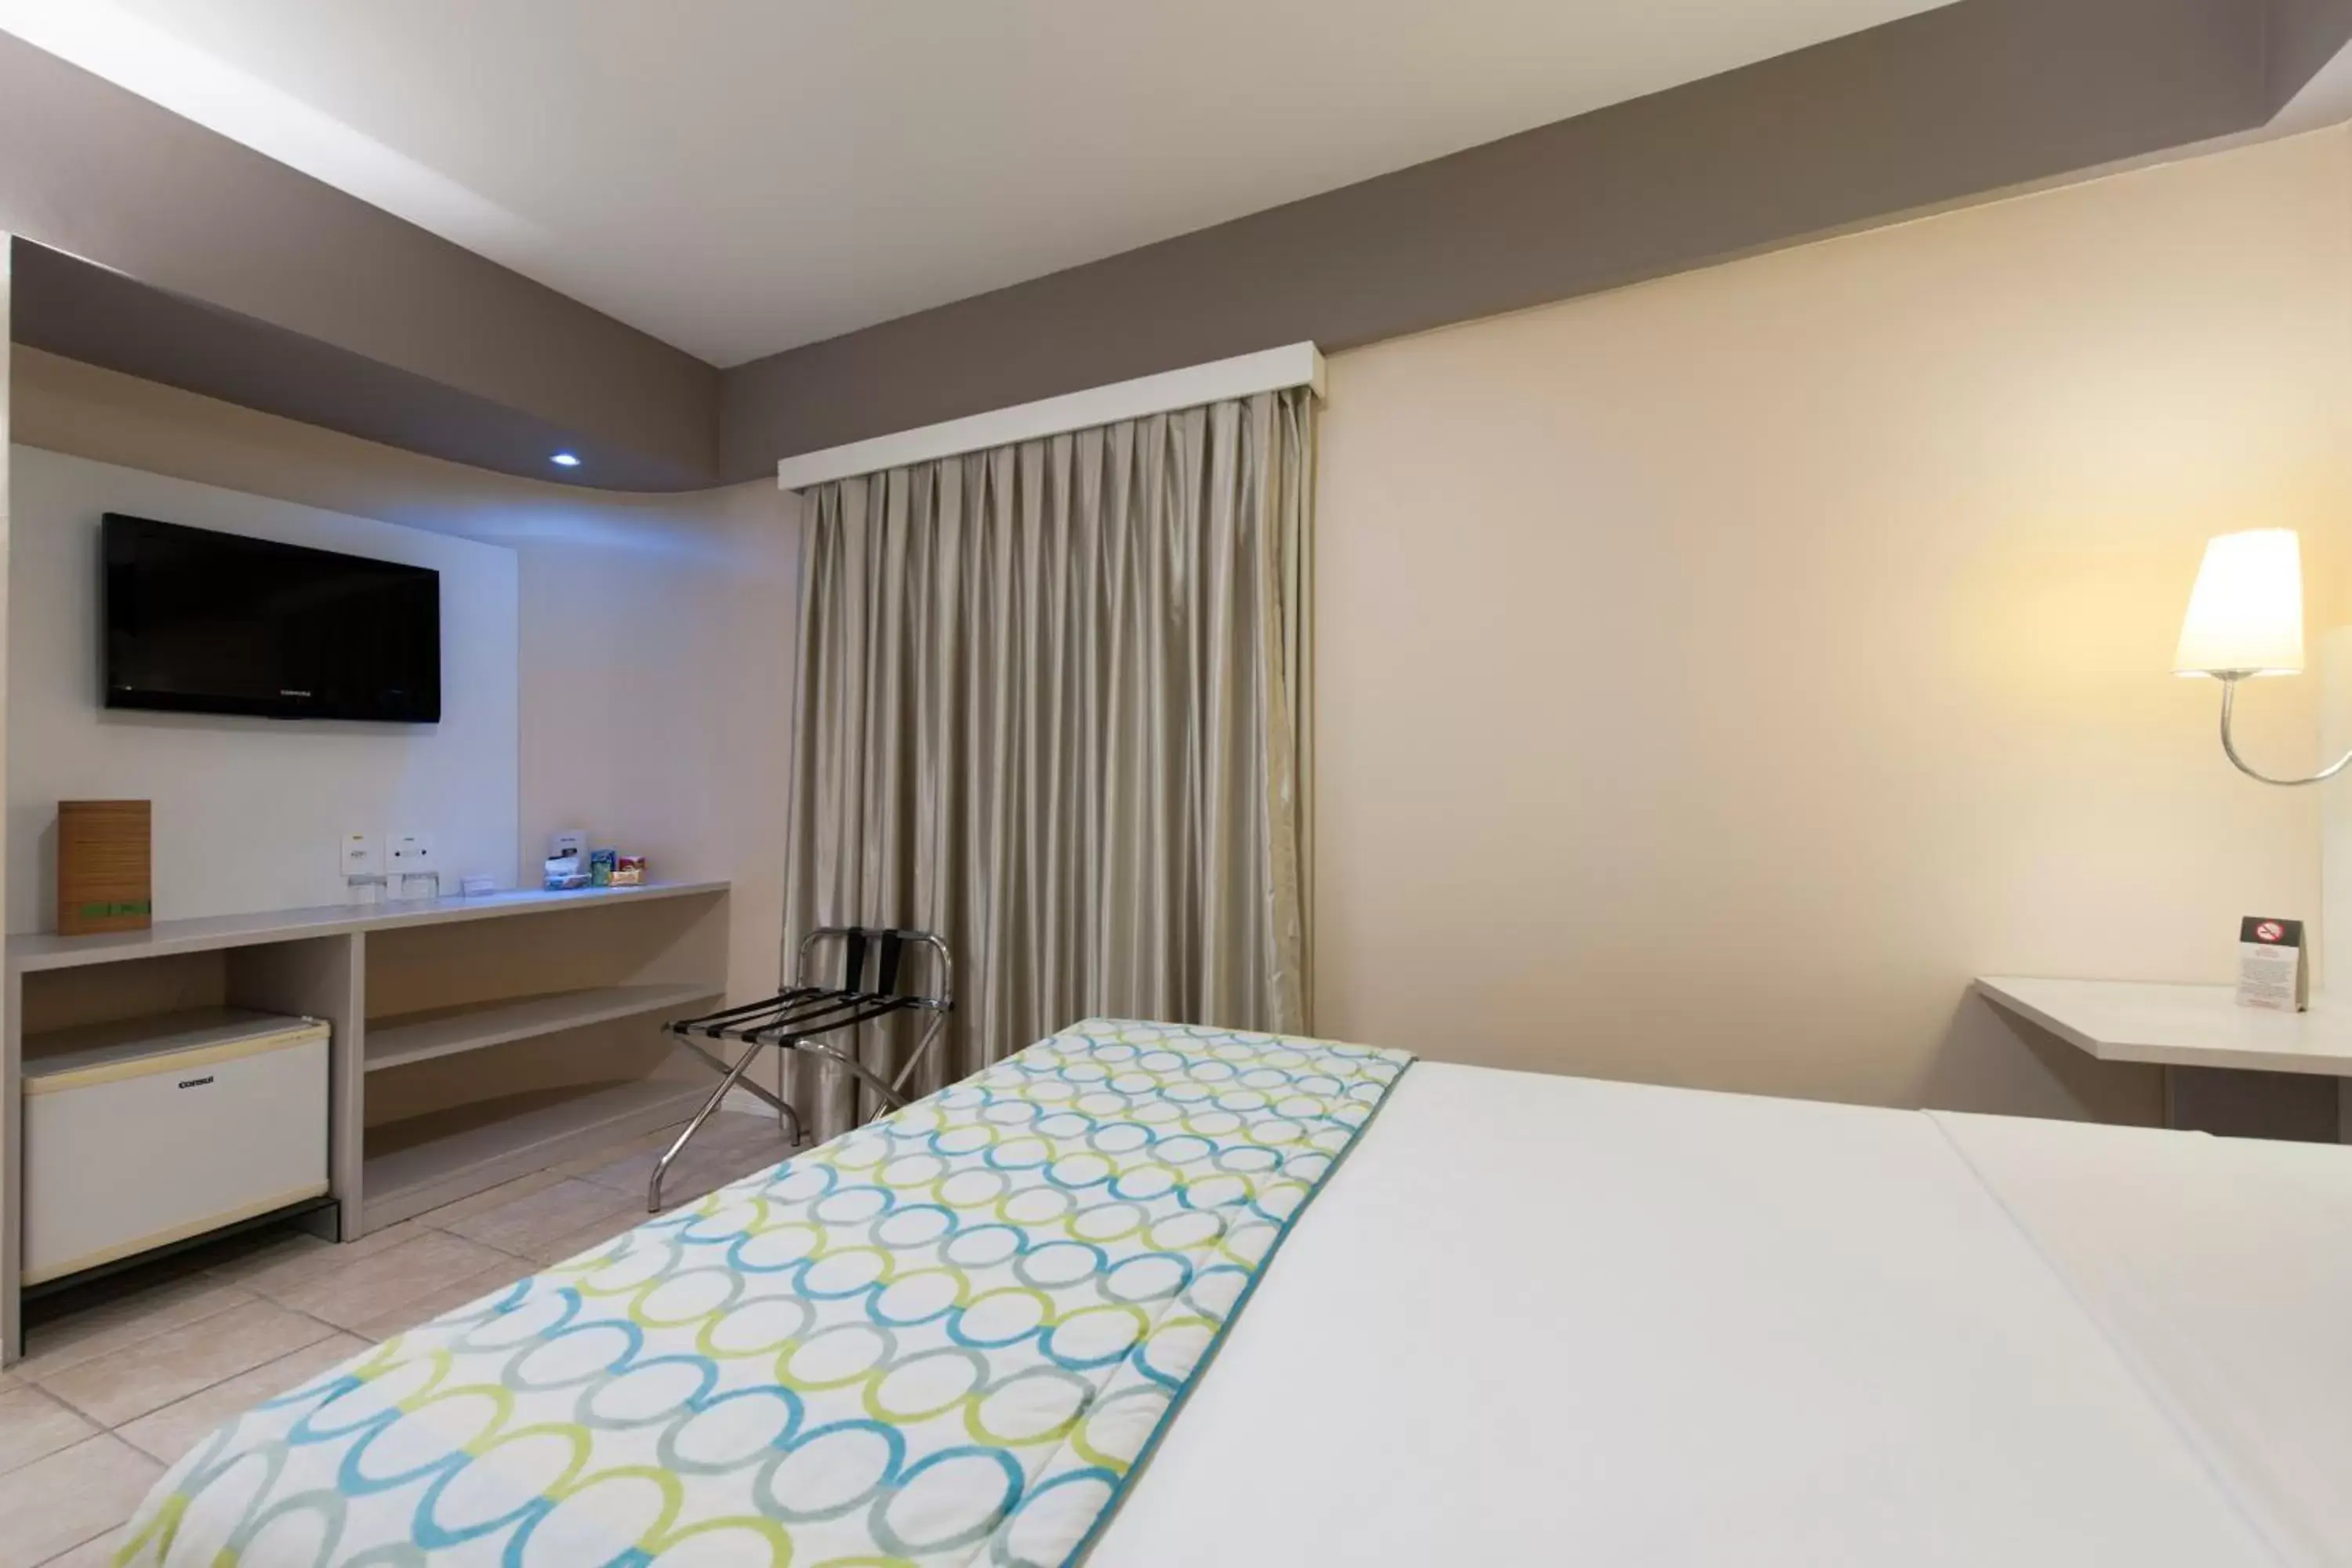 Bed, Room Photo in Comfort Hotel Fortaleza